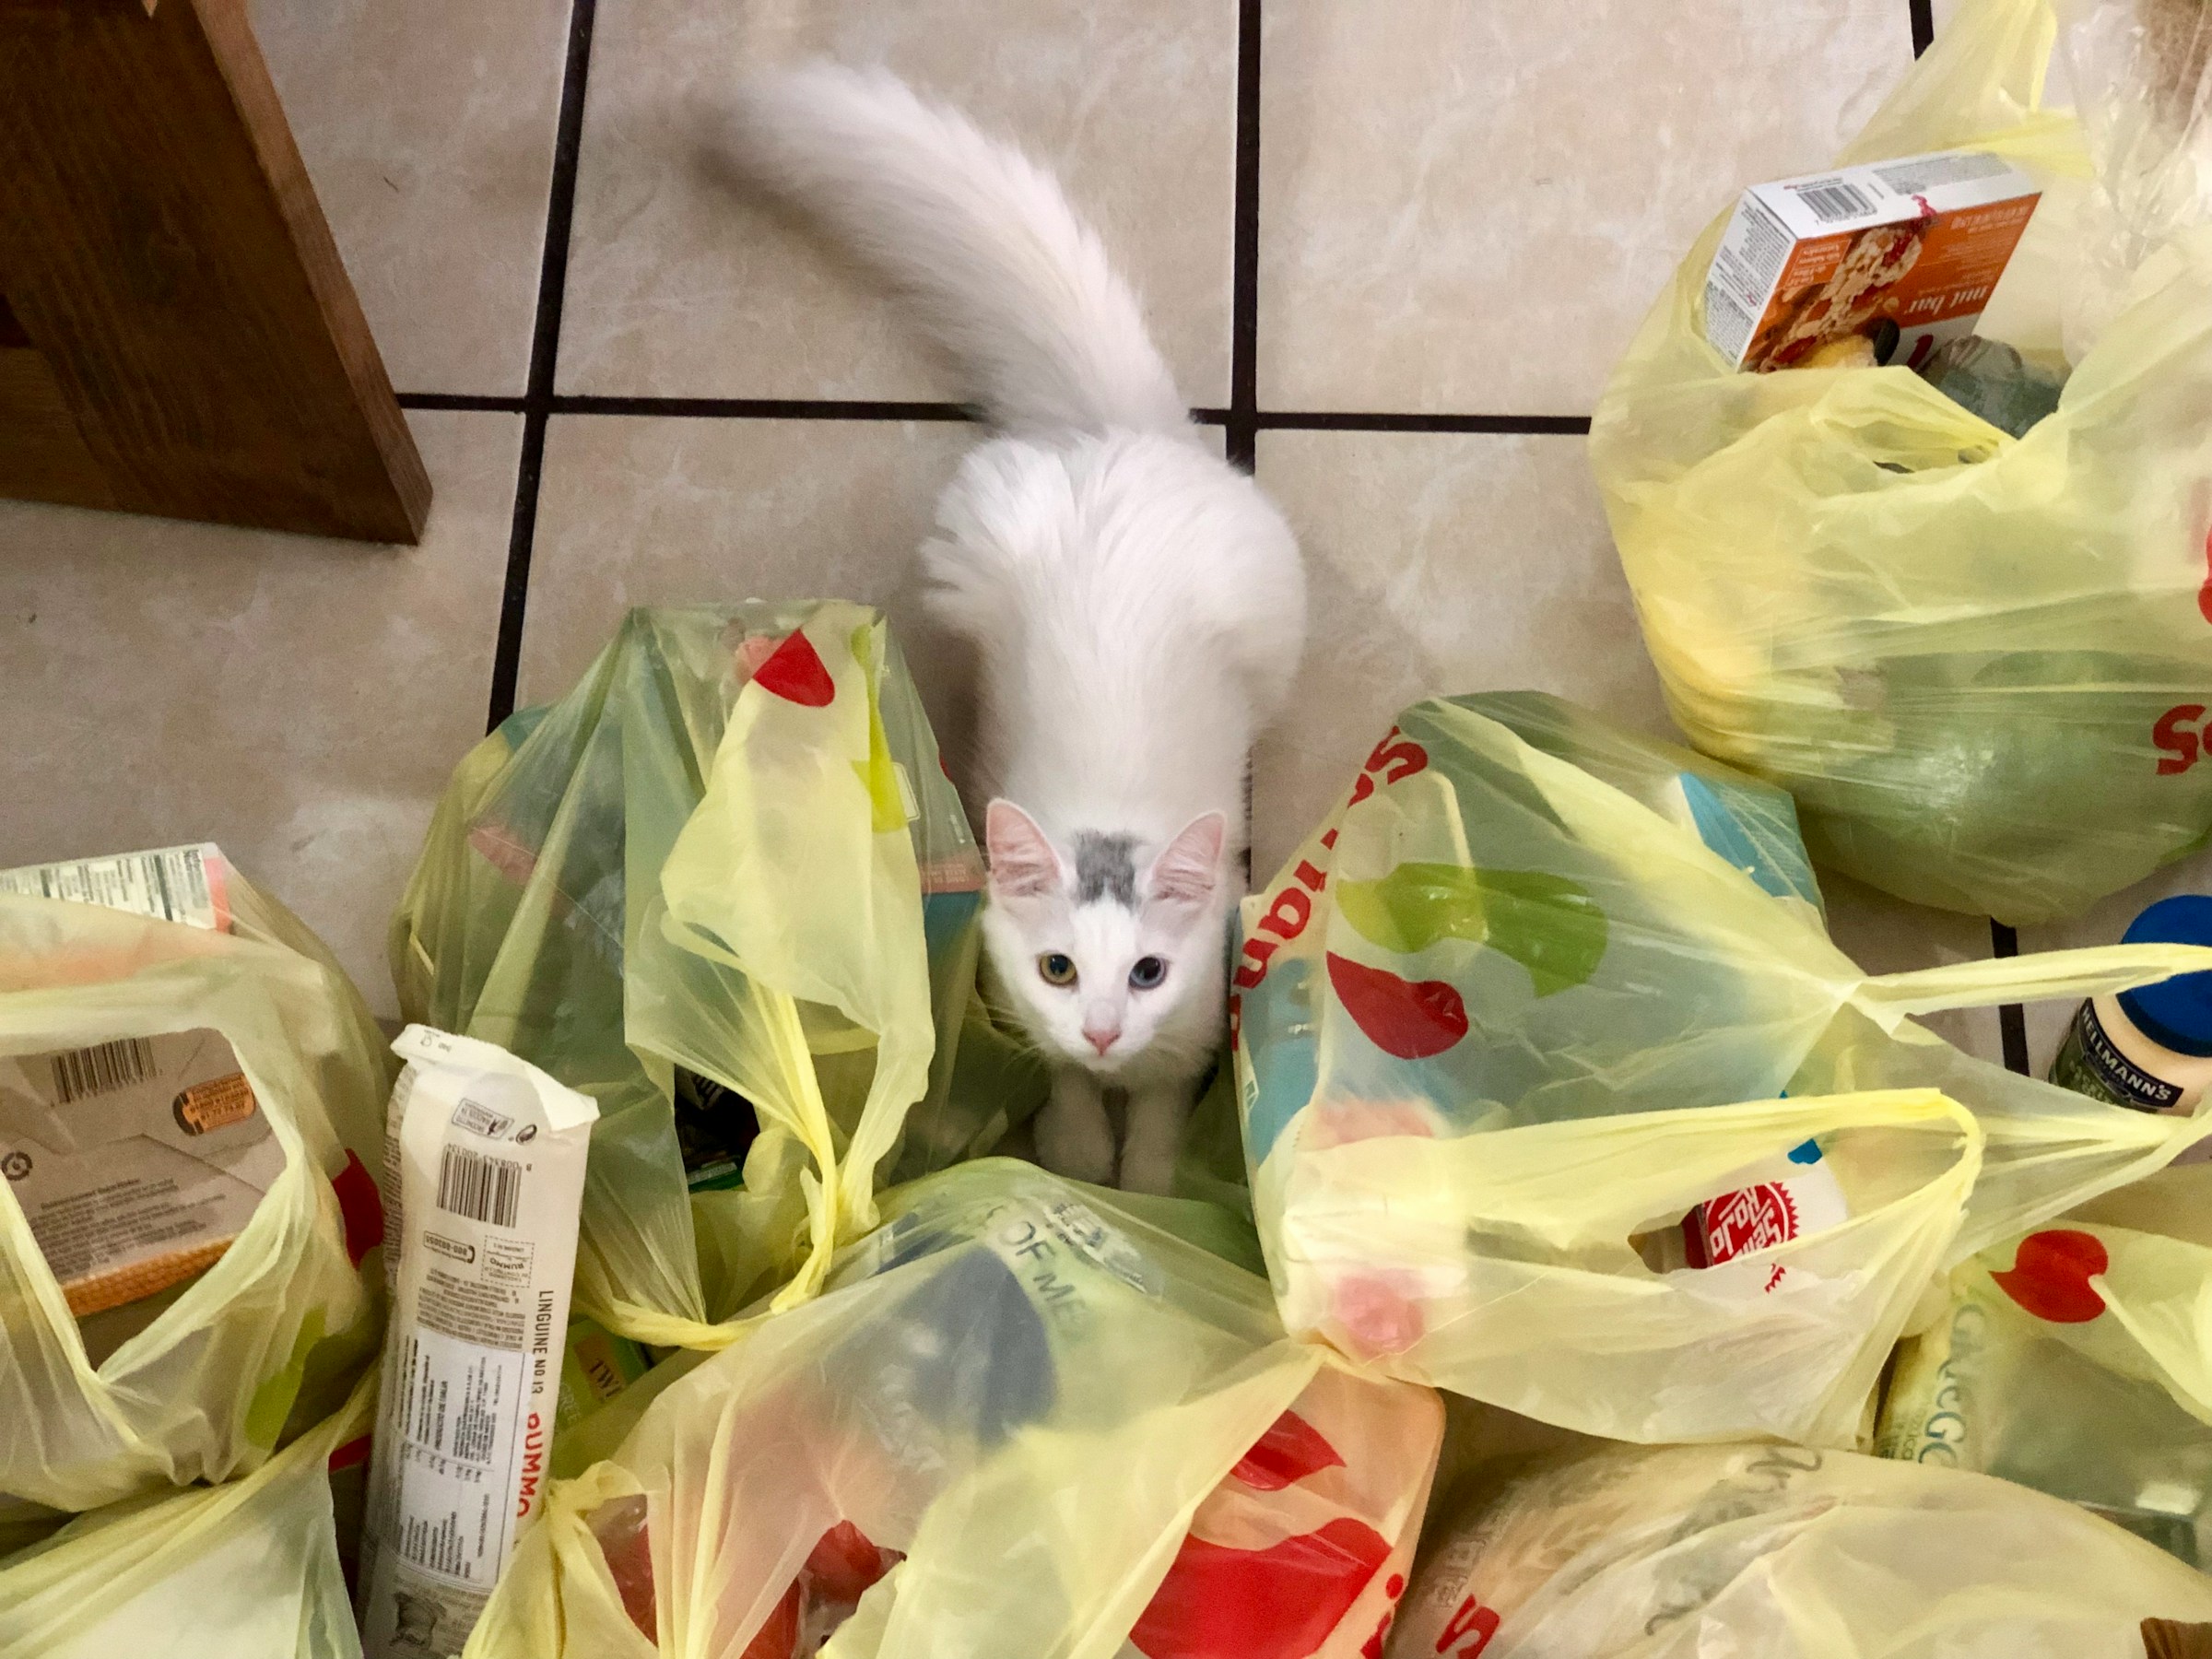 Un chat au milieu des sacs d'épicerie | Source : Unsplash